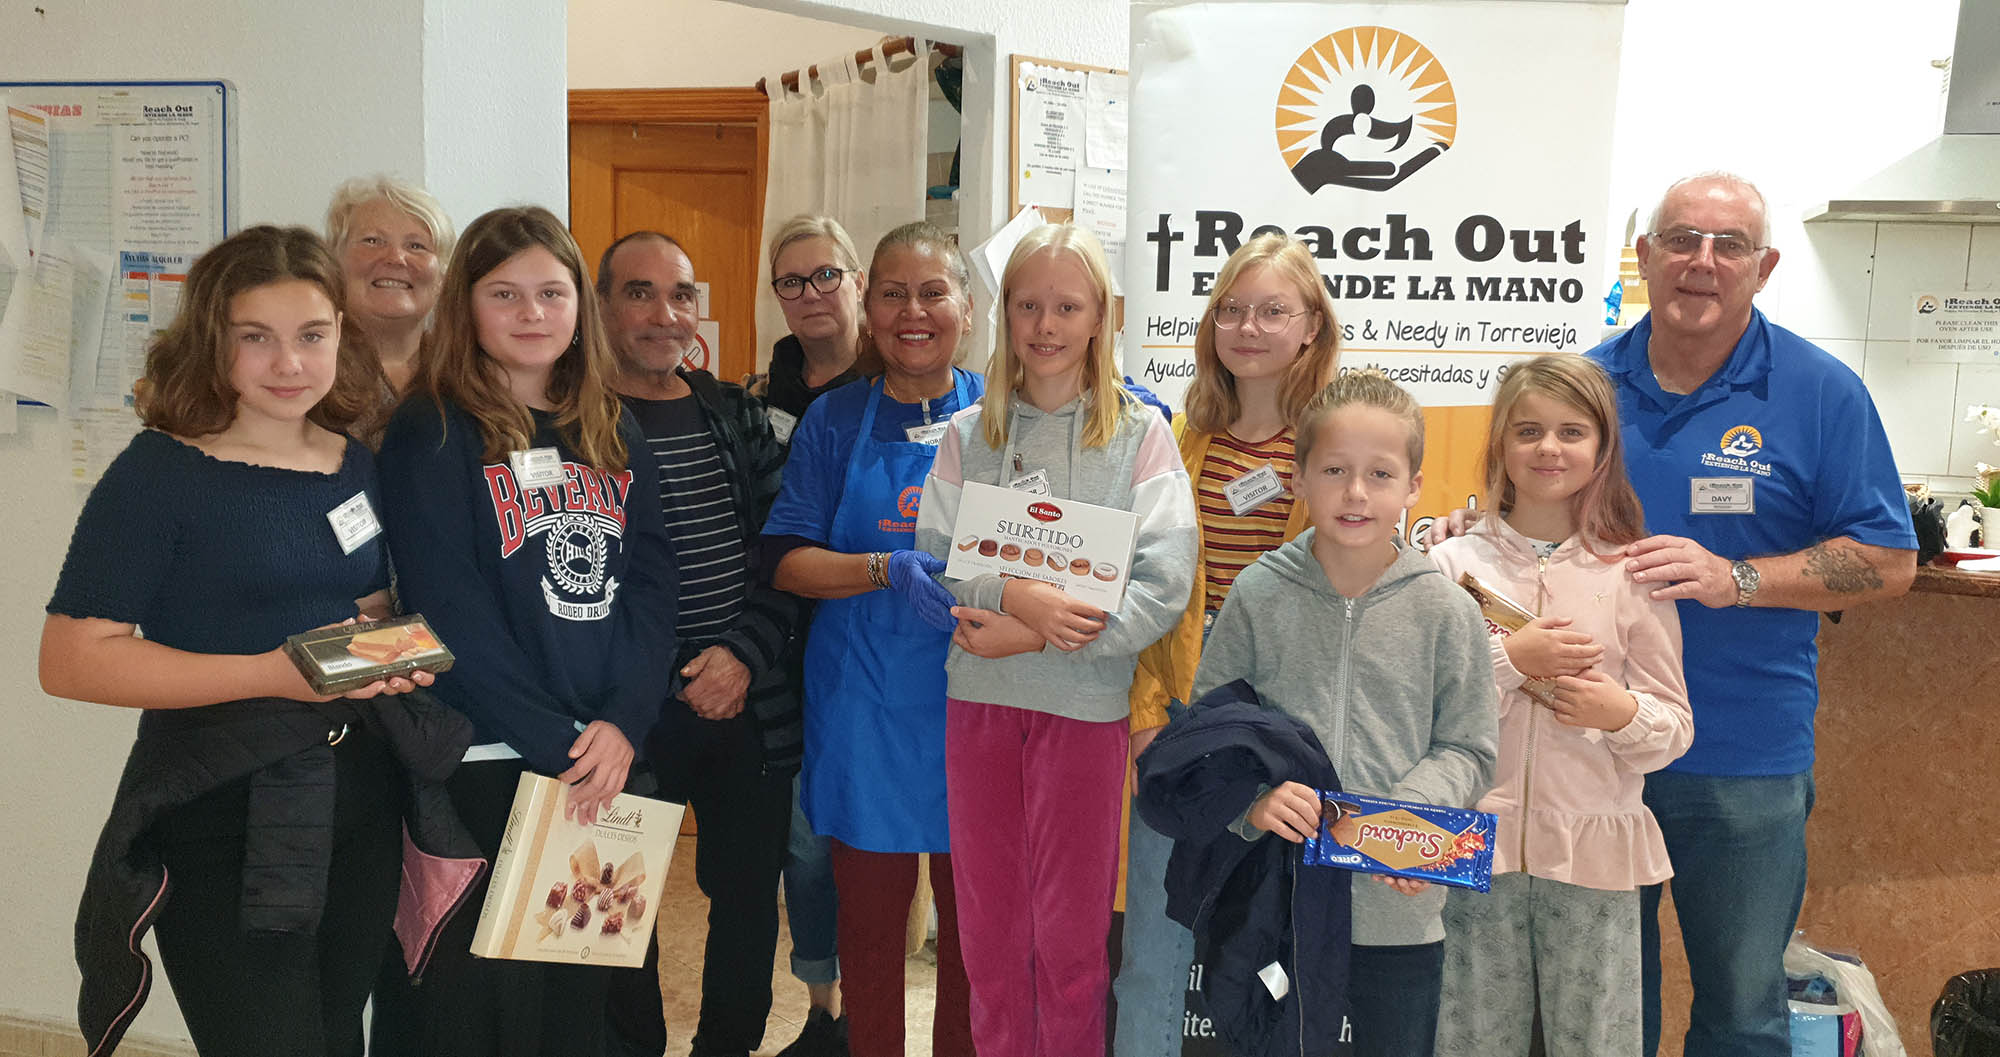 Scandinavian School “Reach Out” to the homeless